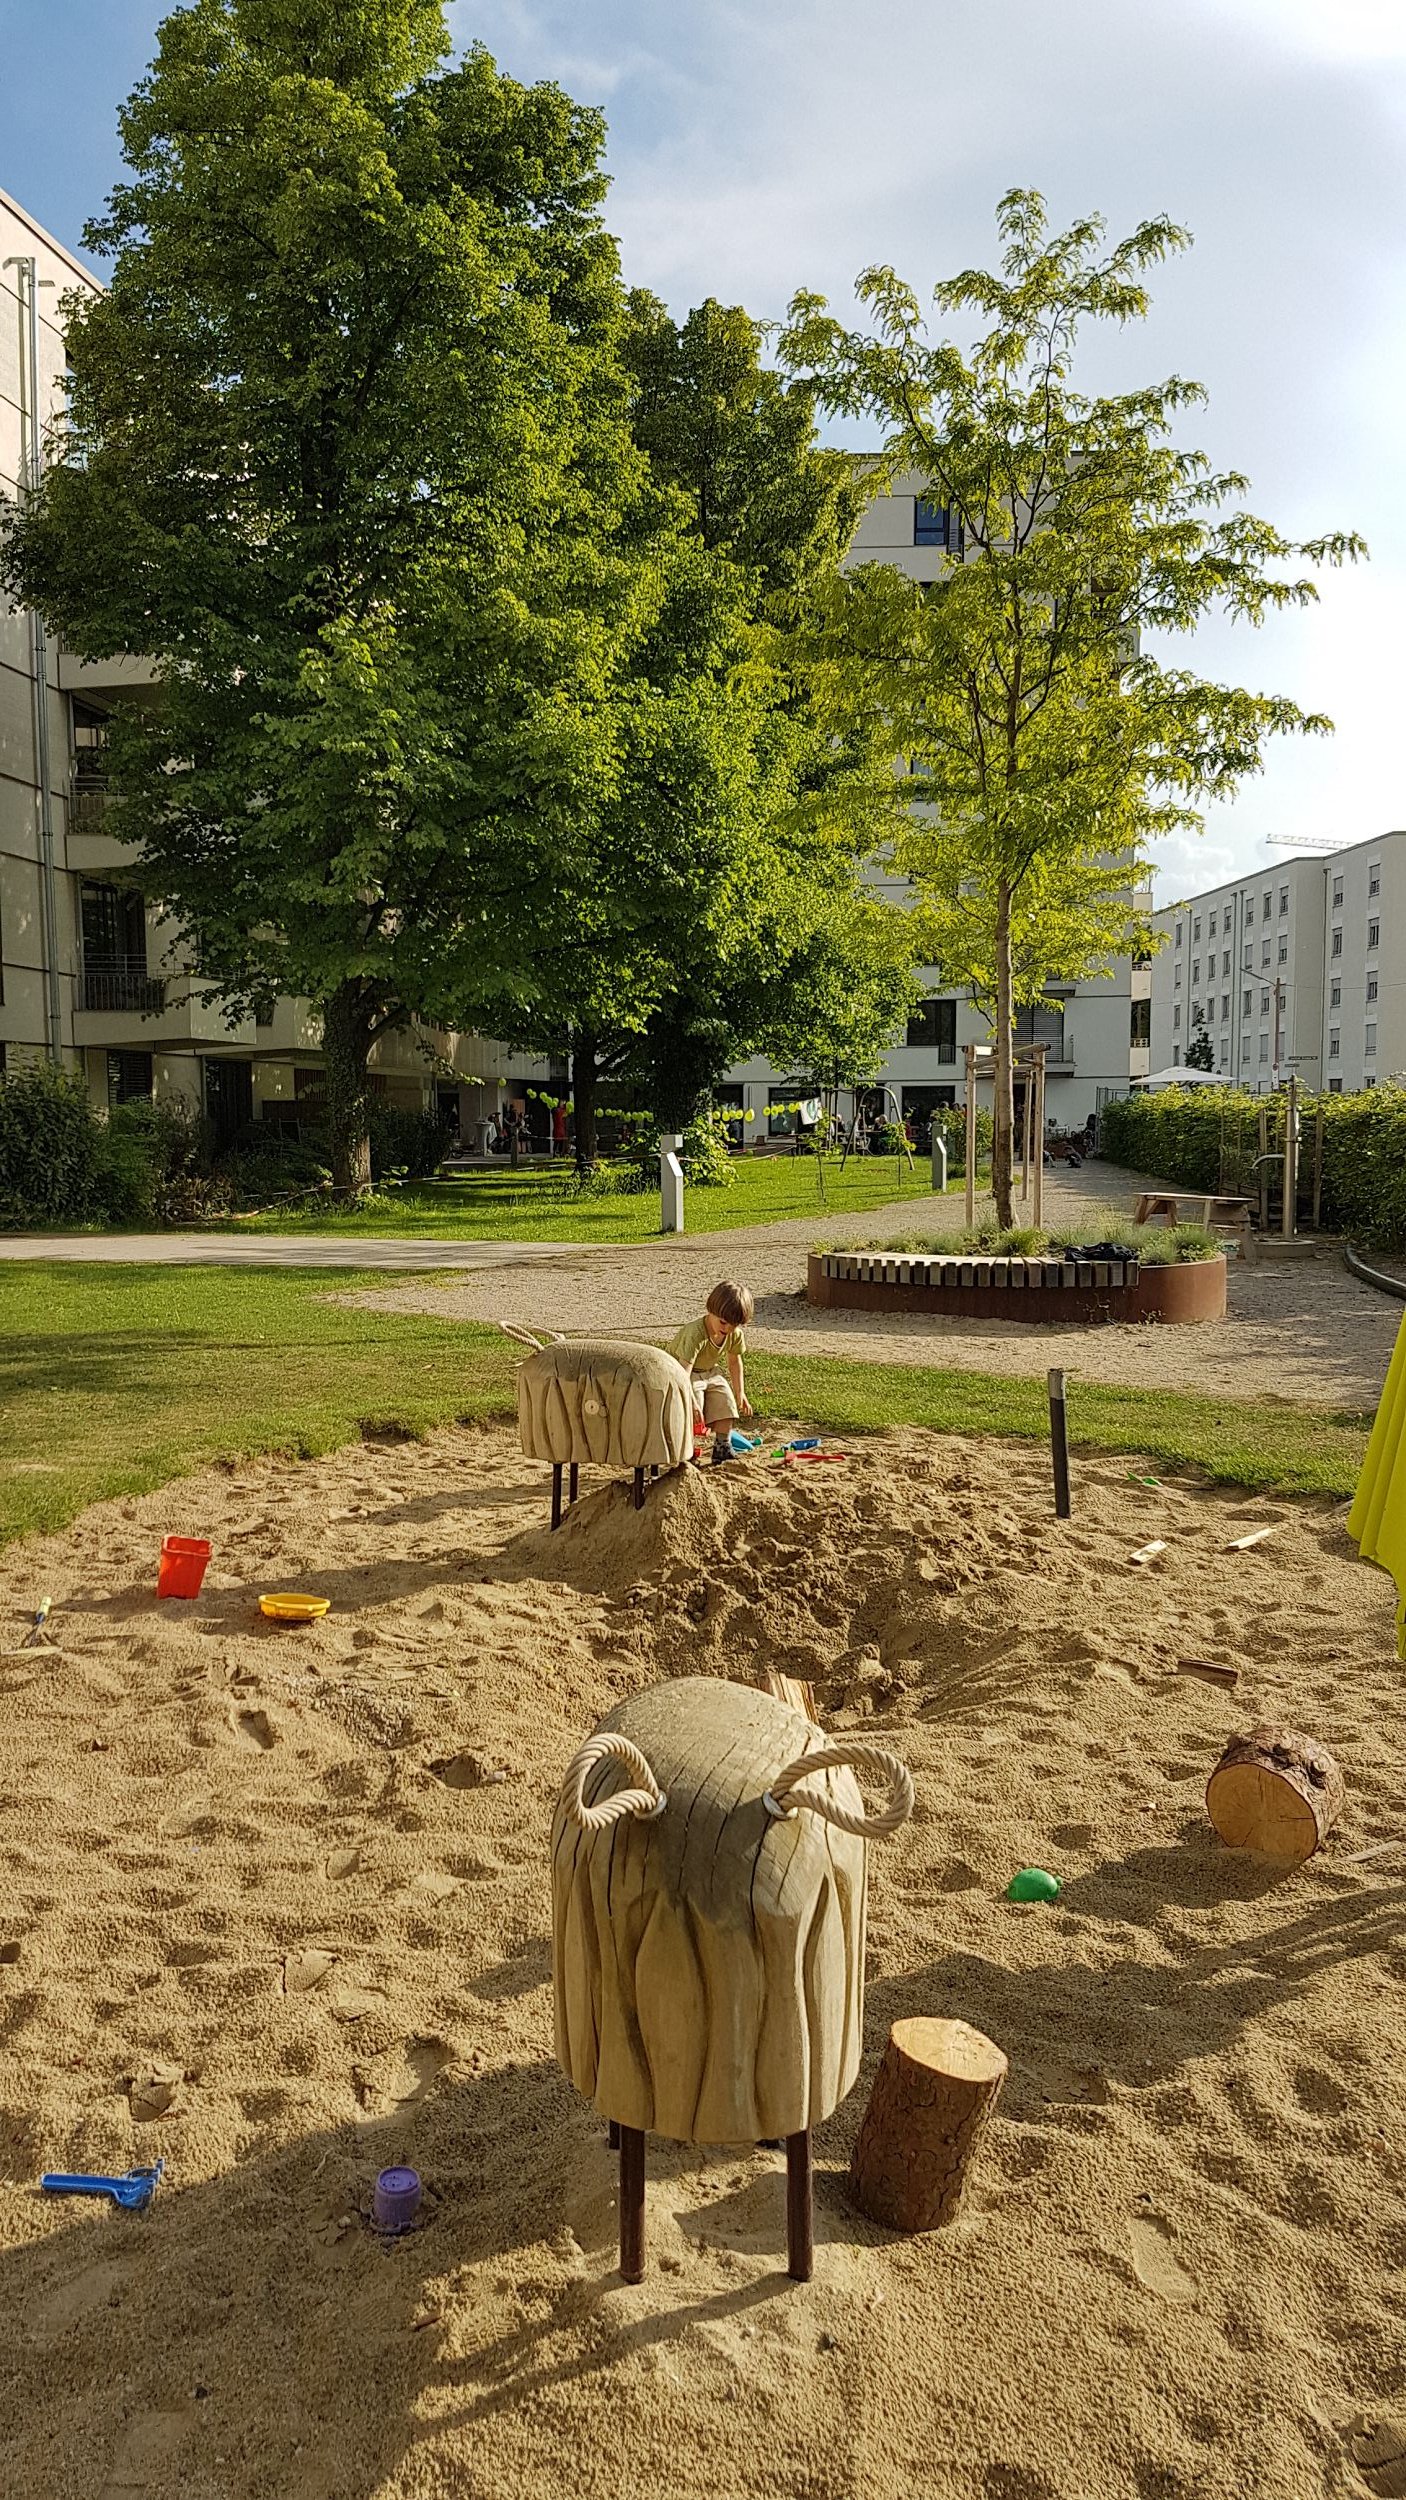 Bild: Spielplatz im grünen Innenhof, Foto: ver.de landschaftsarchitektur